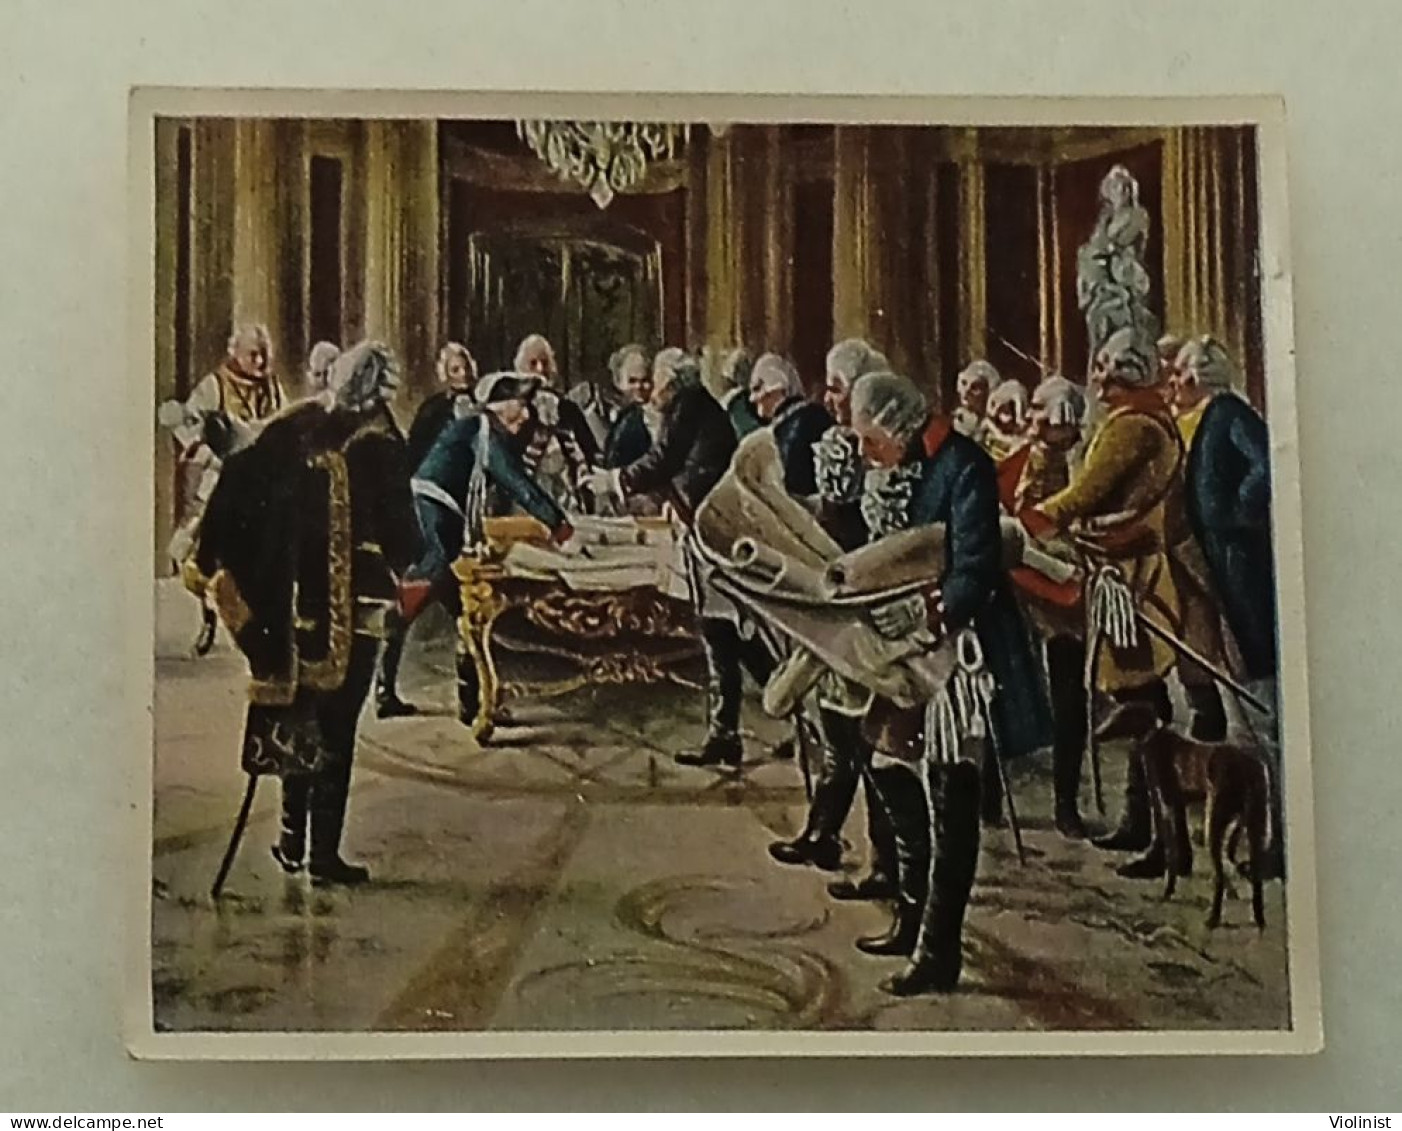 Bilder Deutscher Geschichte-Friedrich Der Große Halt Kriegsrat Mit Seinen Generalen-August 1756. - History